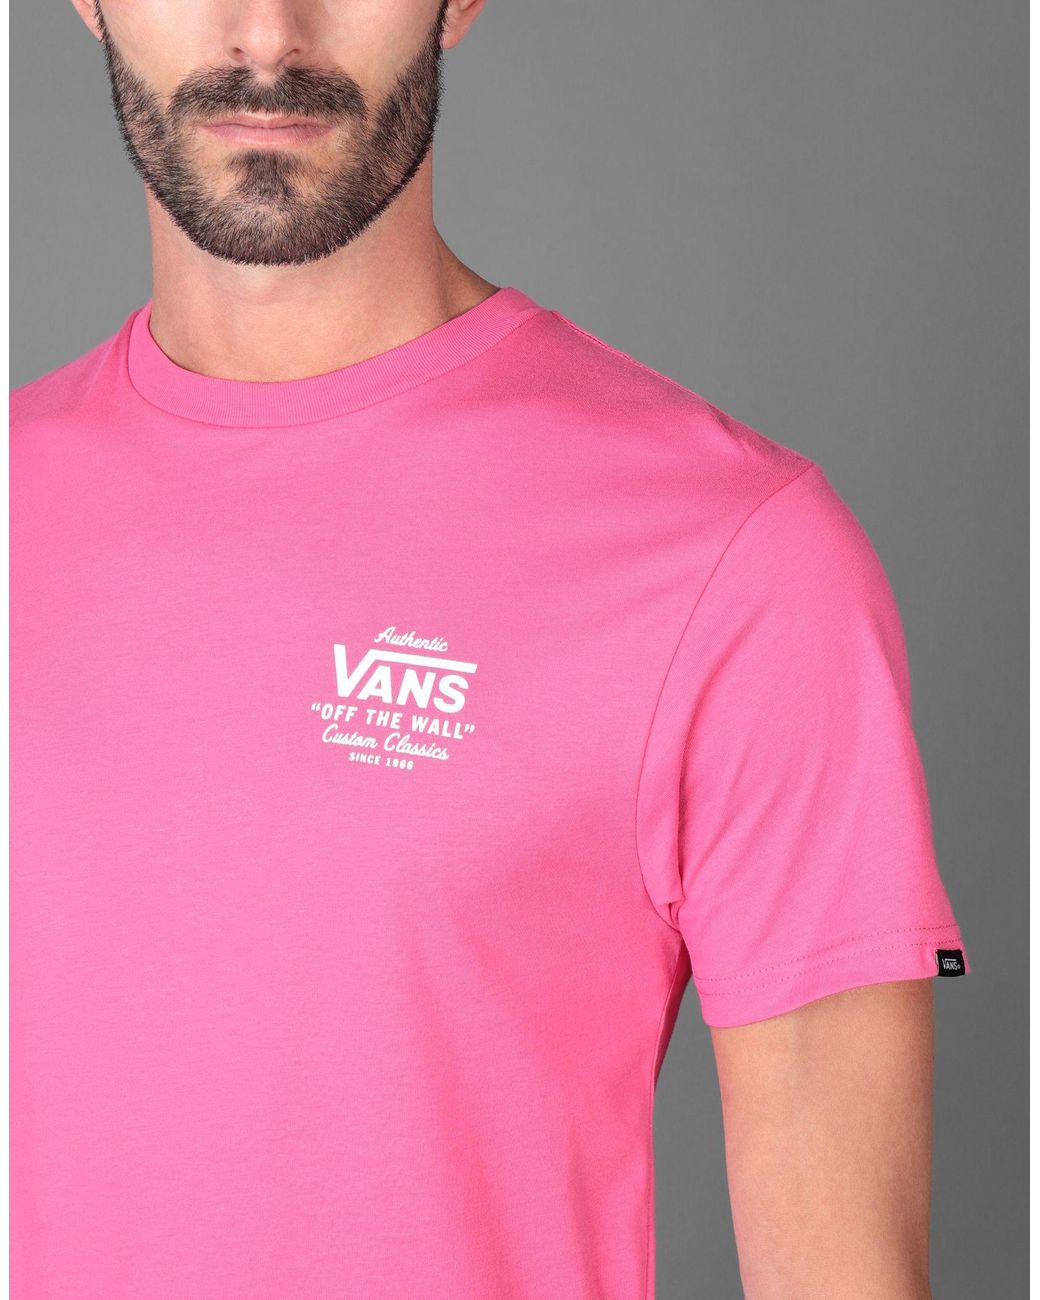 strimmel Det er det heldige Overskæg Vans T-shirt in Pink for Men | Lyst